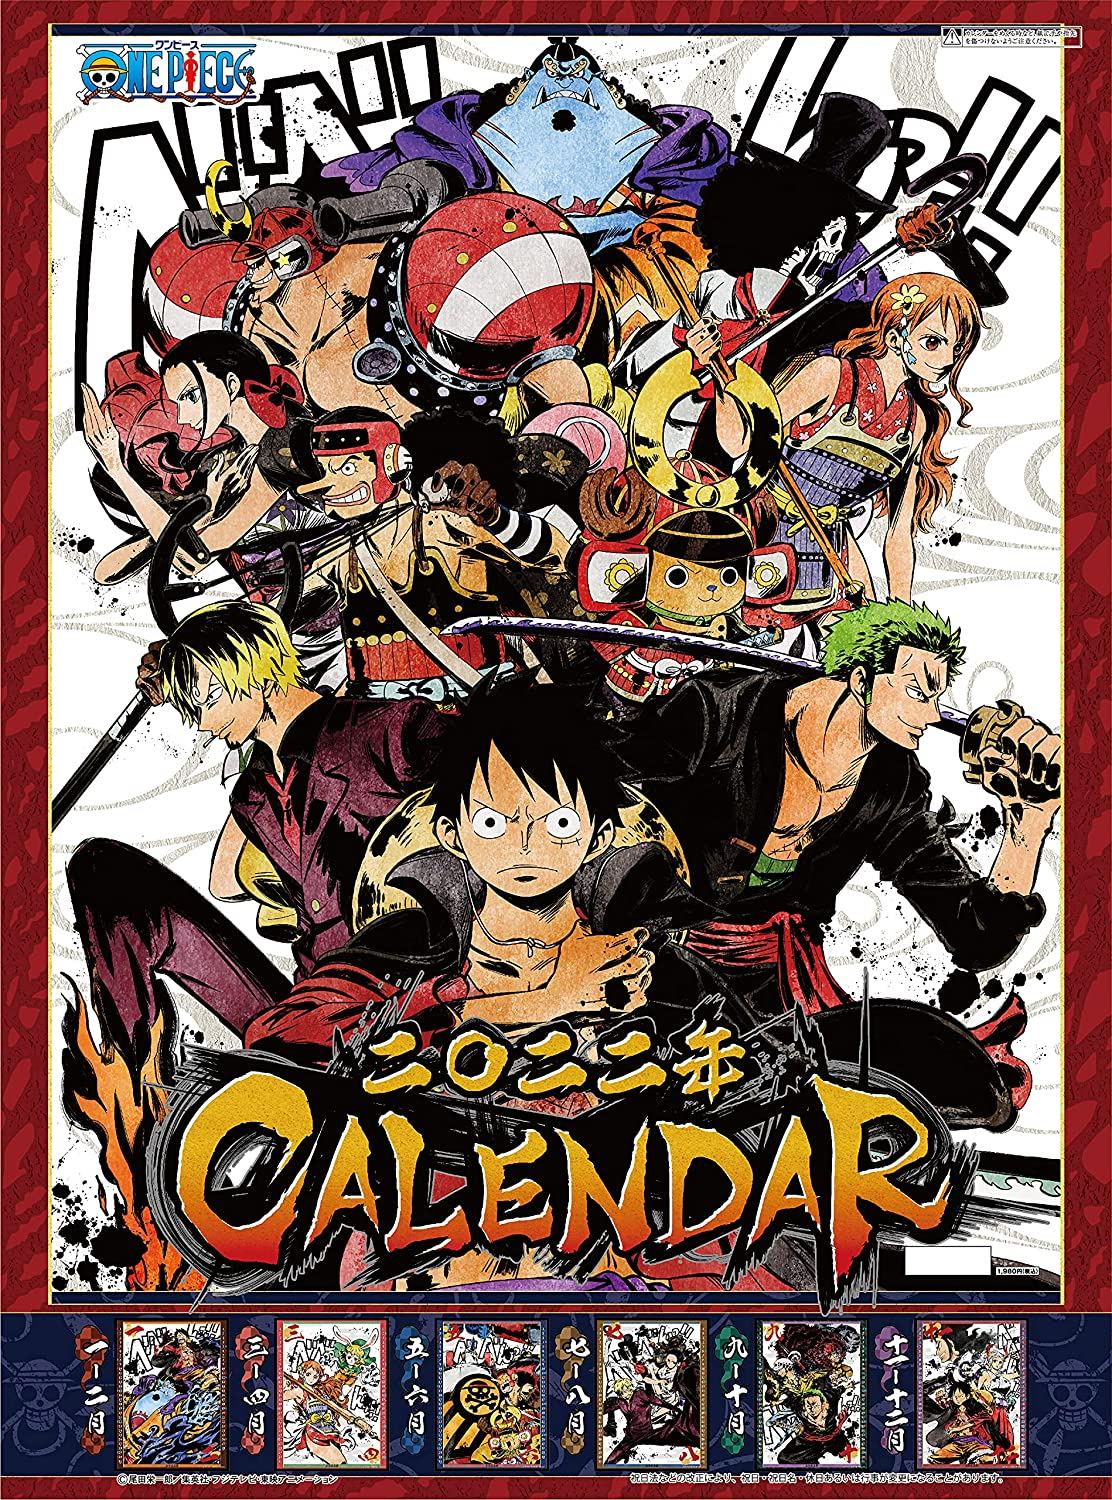 One Piece Wall Calendar – The Calendork